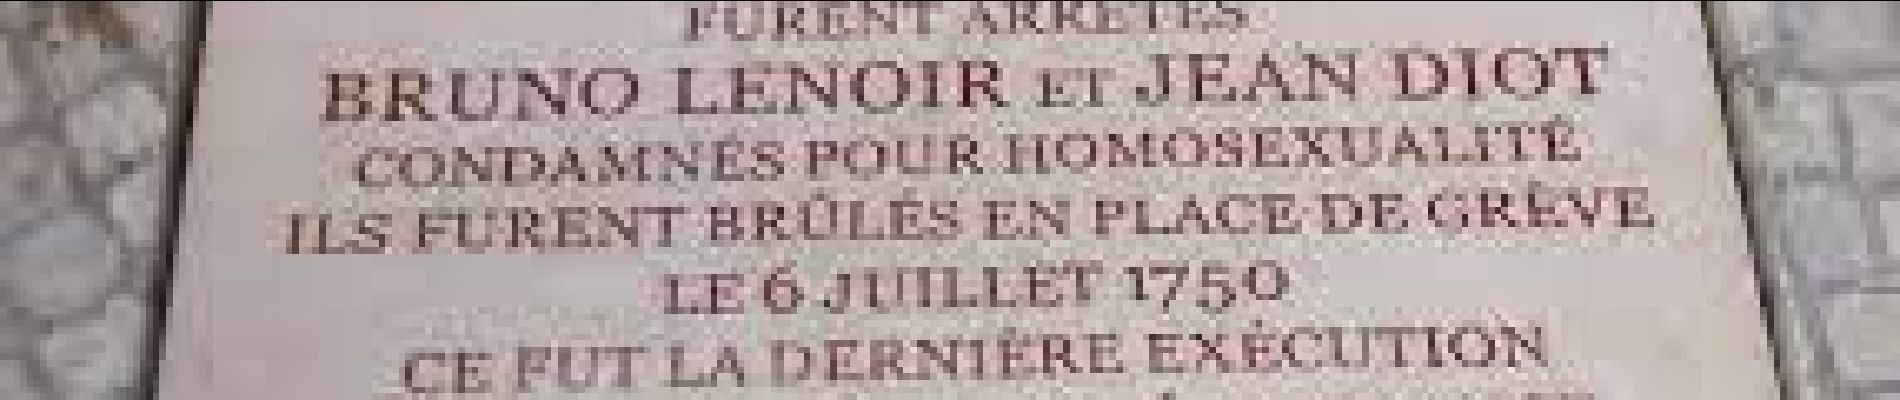 Point d'intérêt Paris - Plaque des derniers amants homosexuels exécutés en France - Photo